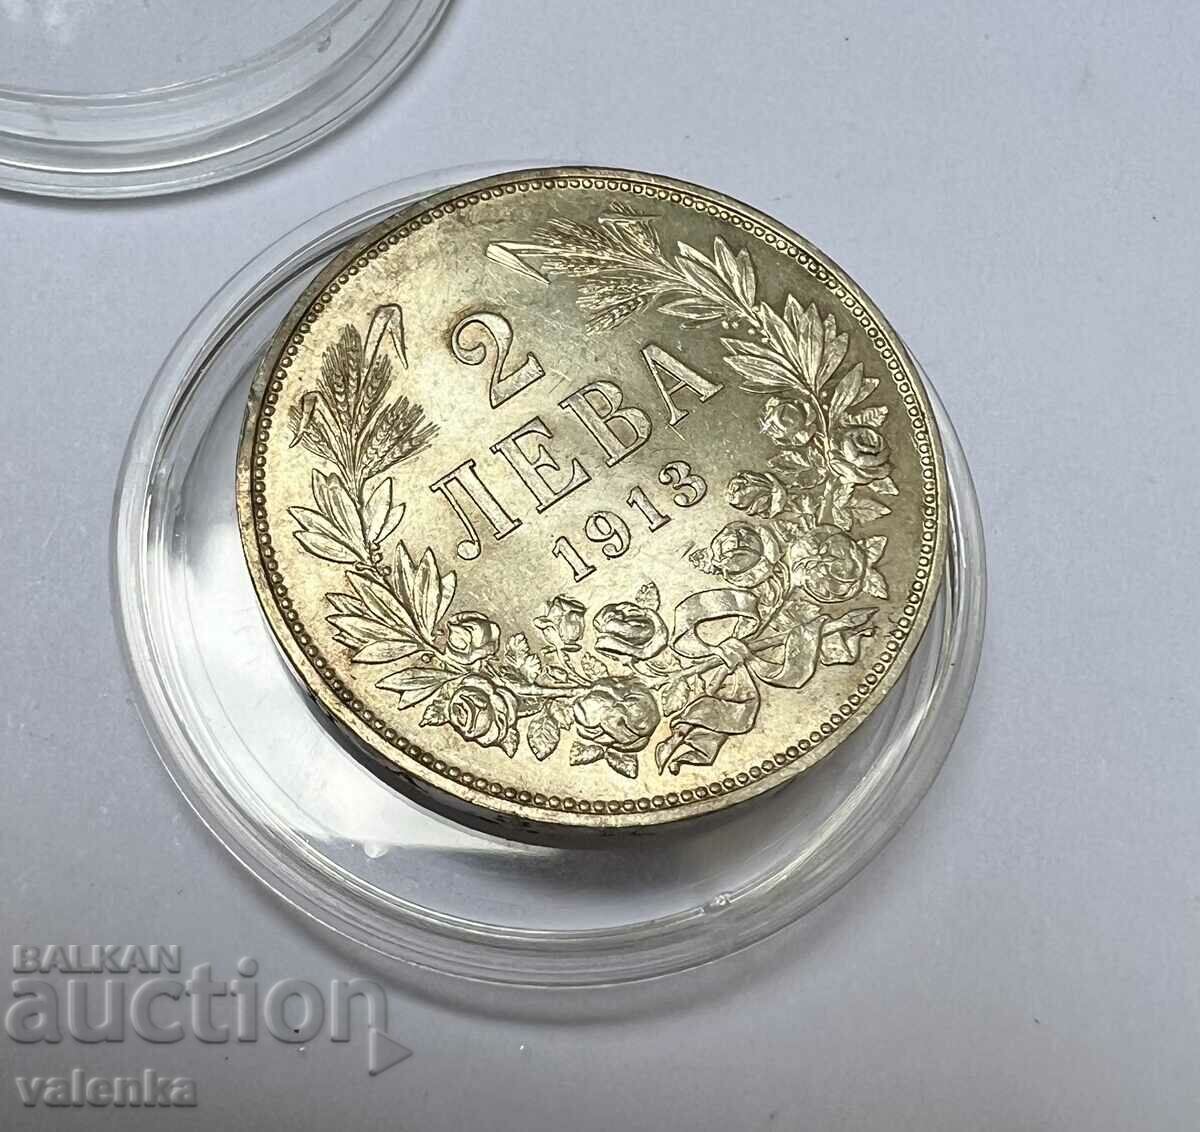 ΚΟΡΥΦΑΙΑ ΒΑΘΜΟΣ - ασημένιο νόμισμα 2 BGN 1913 Ferdinand I